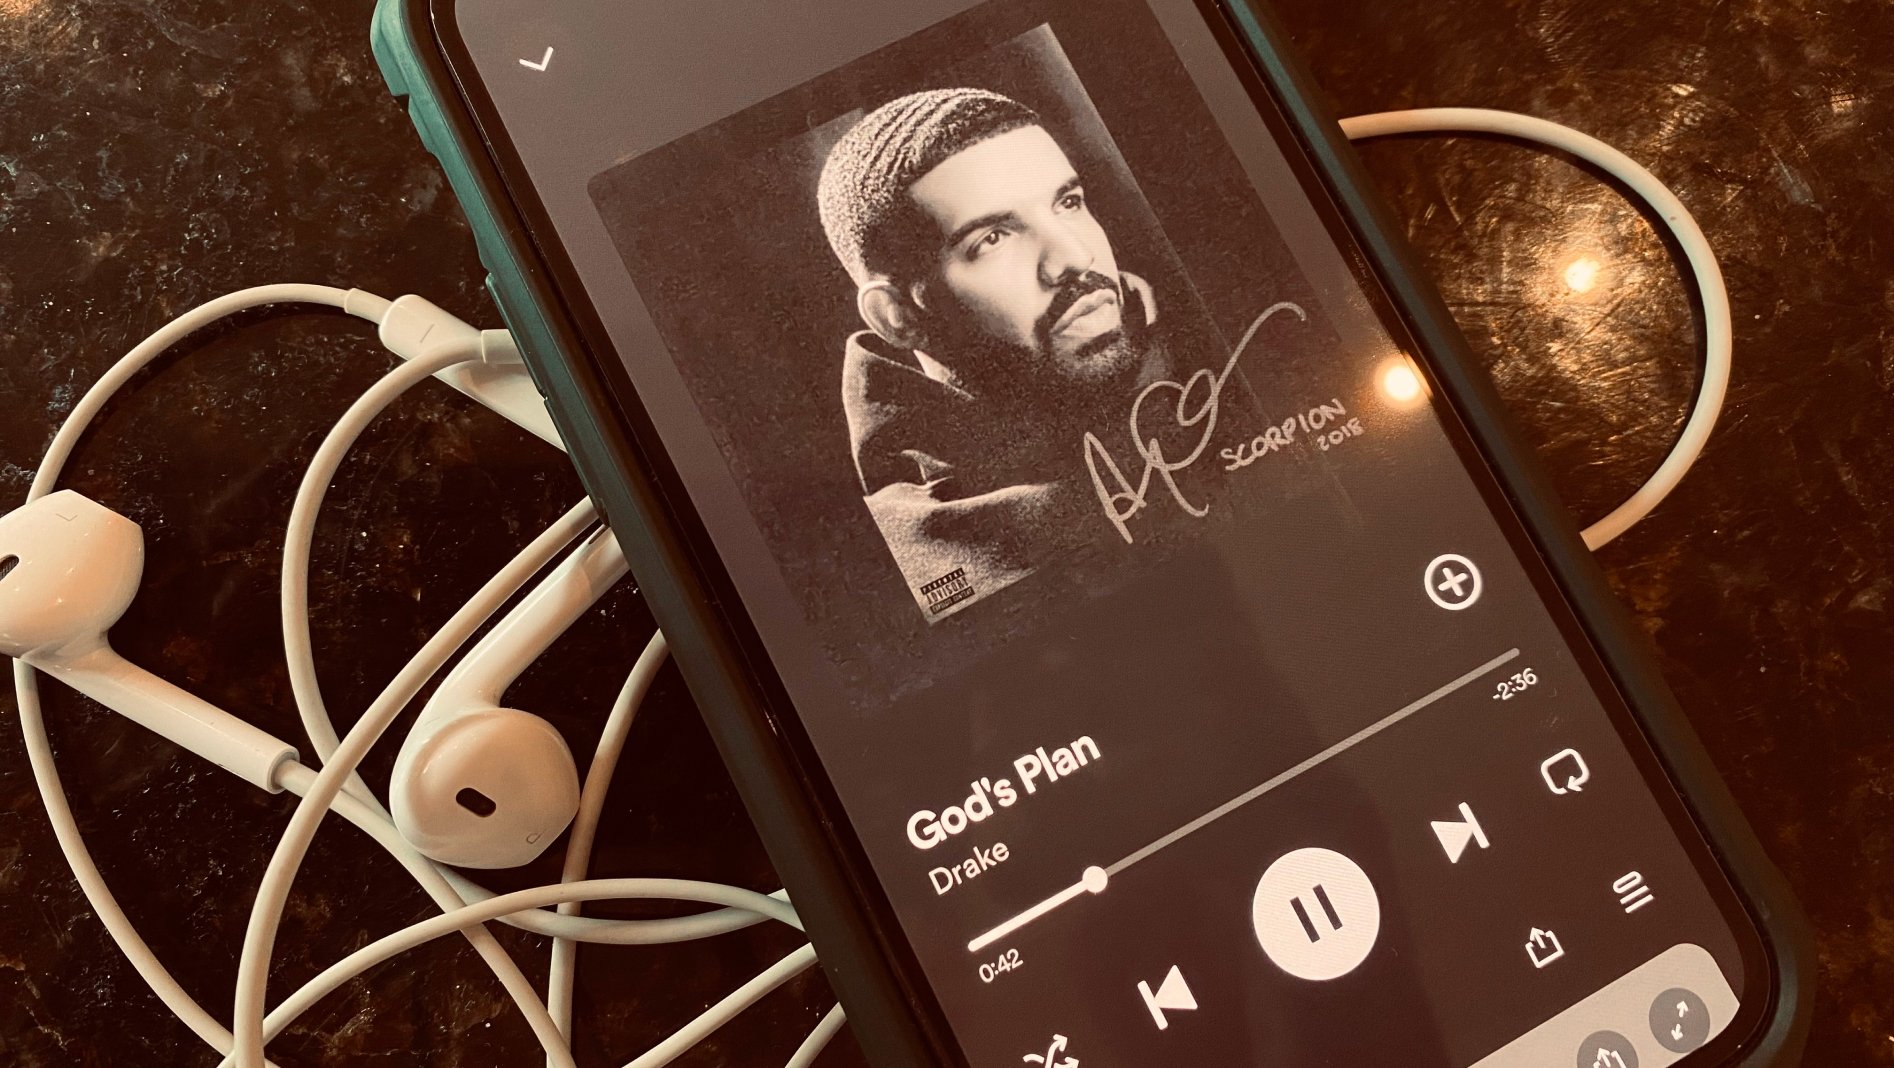 Drake music on phone